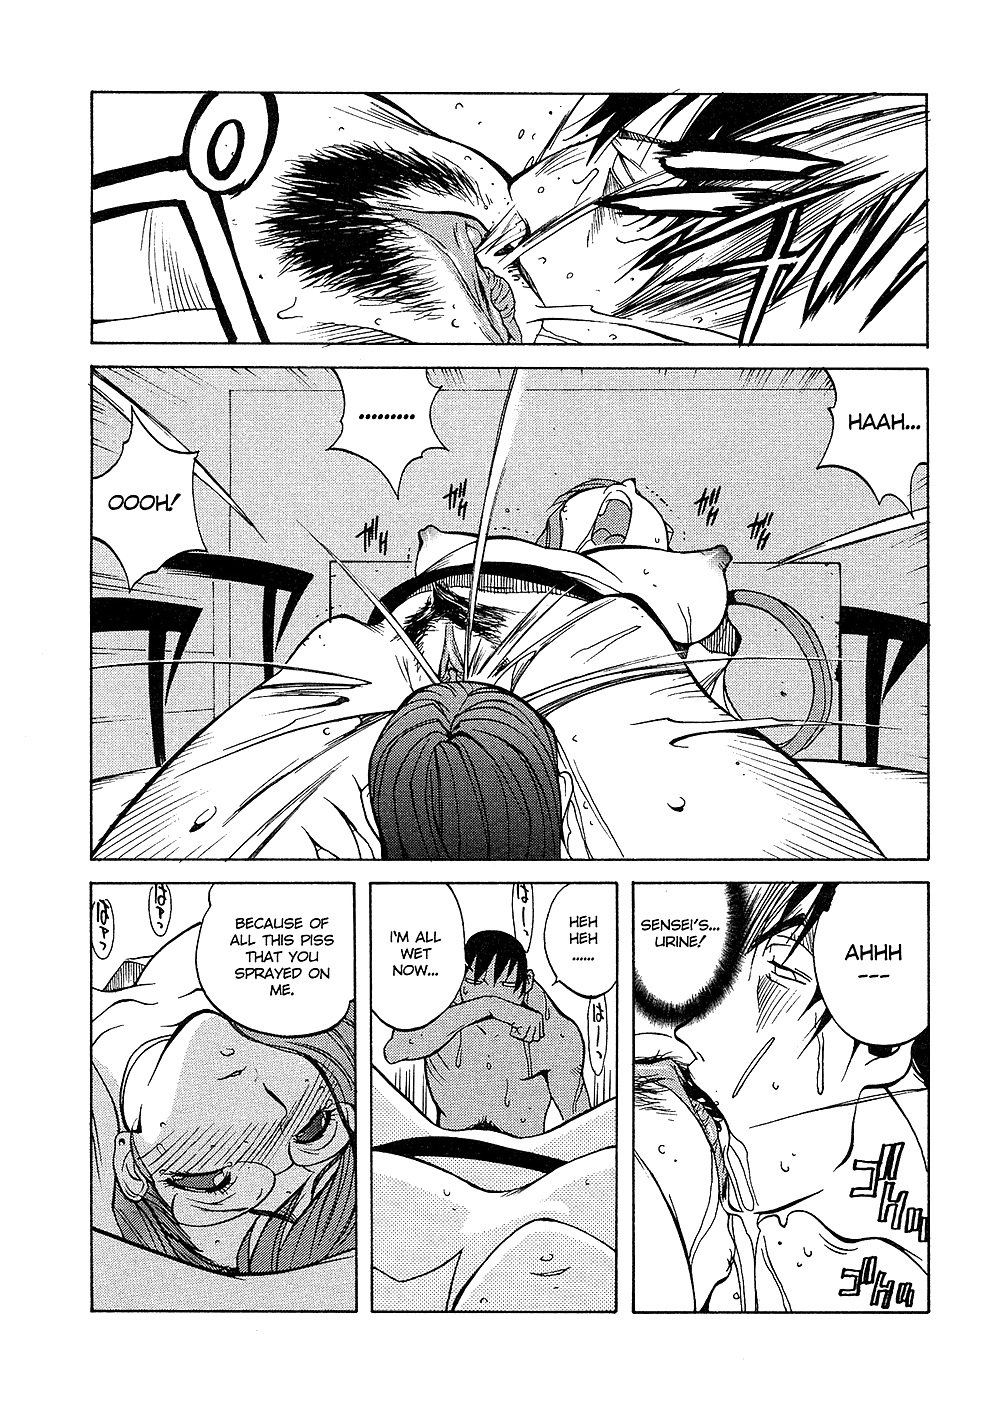 (comic hentai) yumisuke kotoyoshi erotic works #2
 #21623389